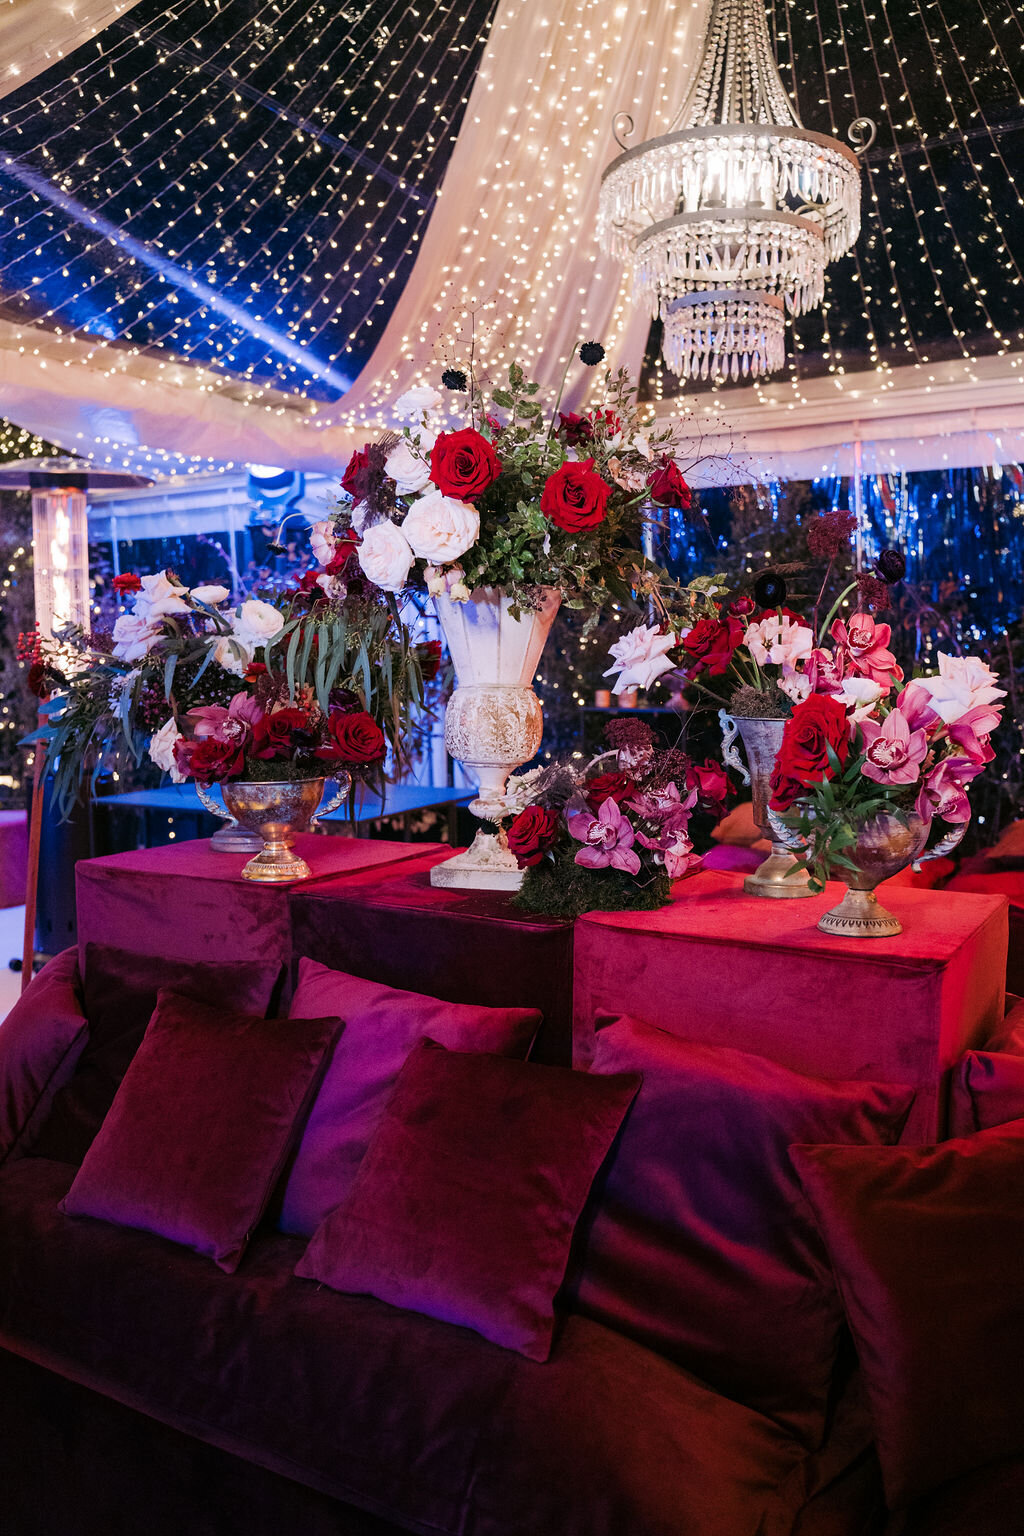 Luxury wedding and decors setup